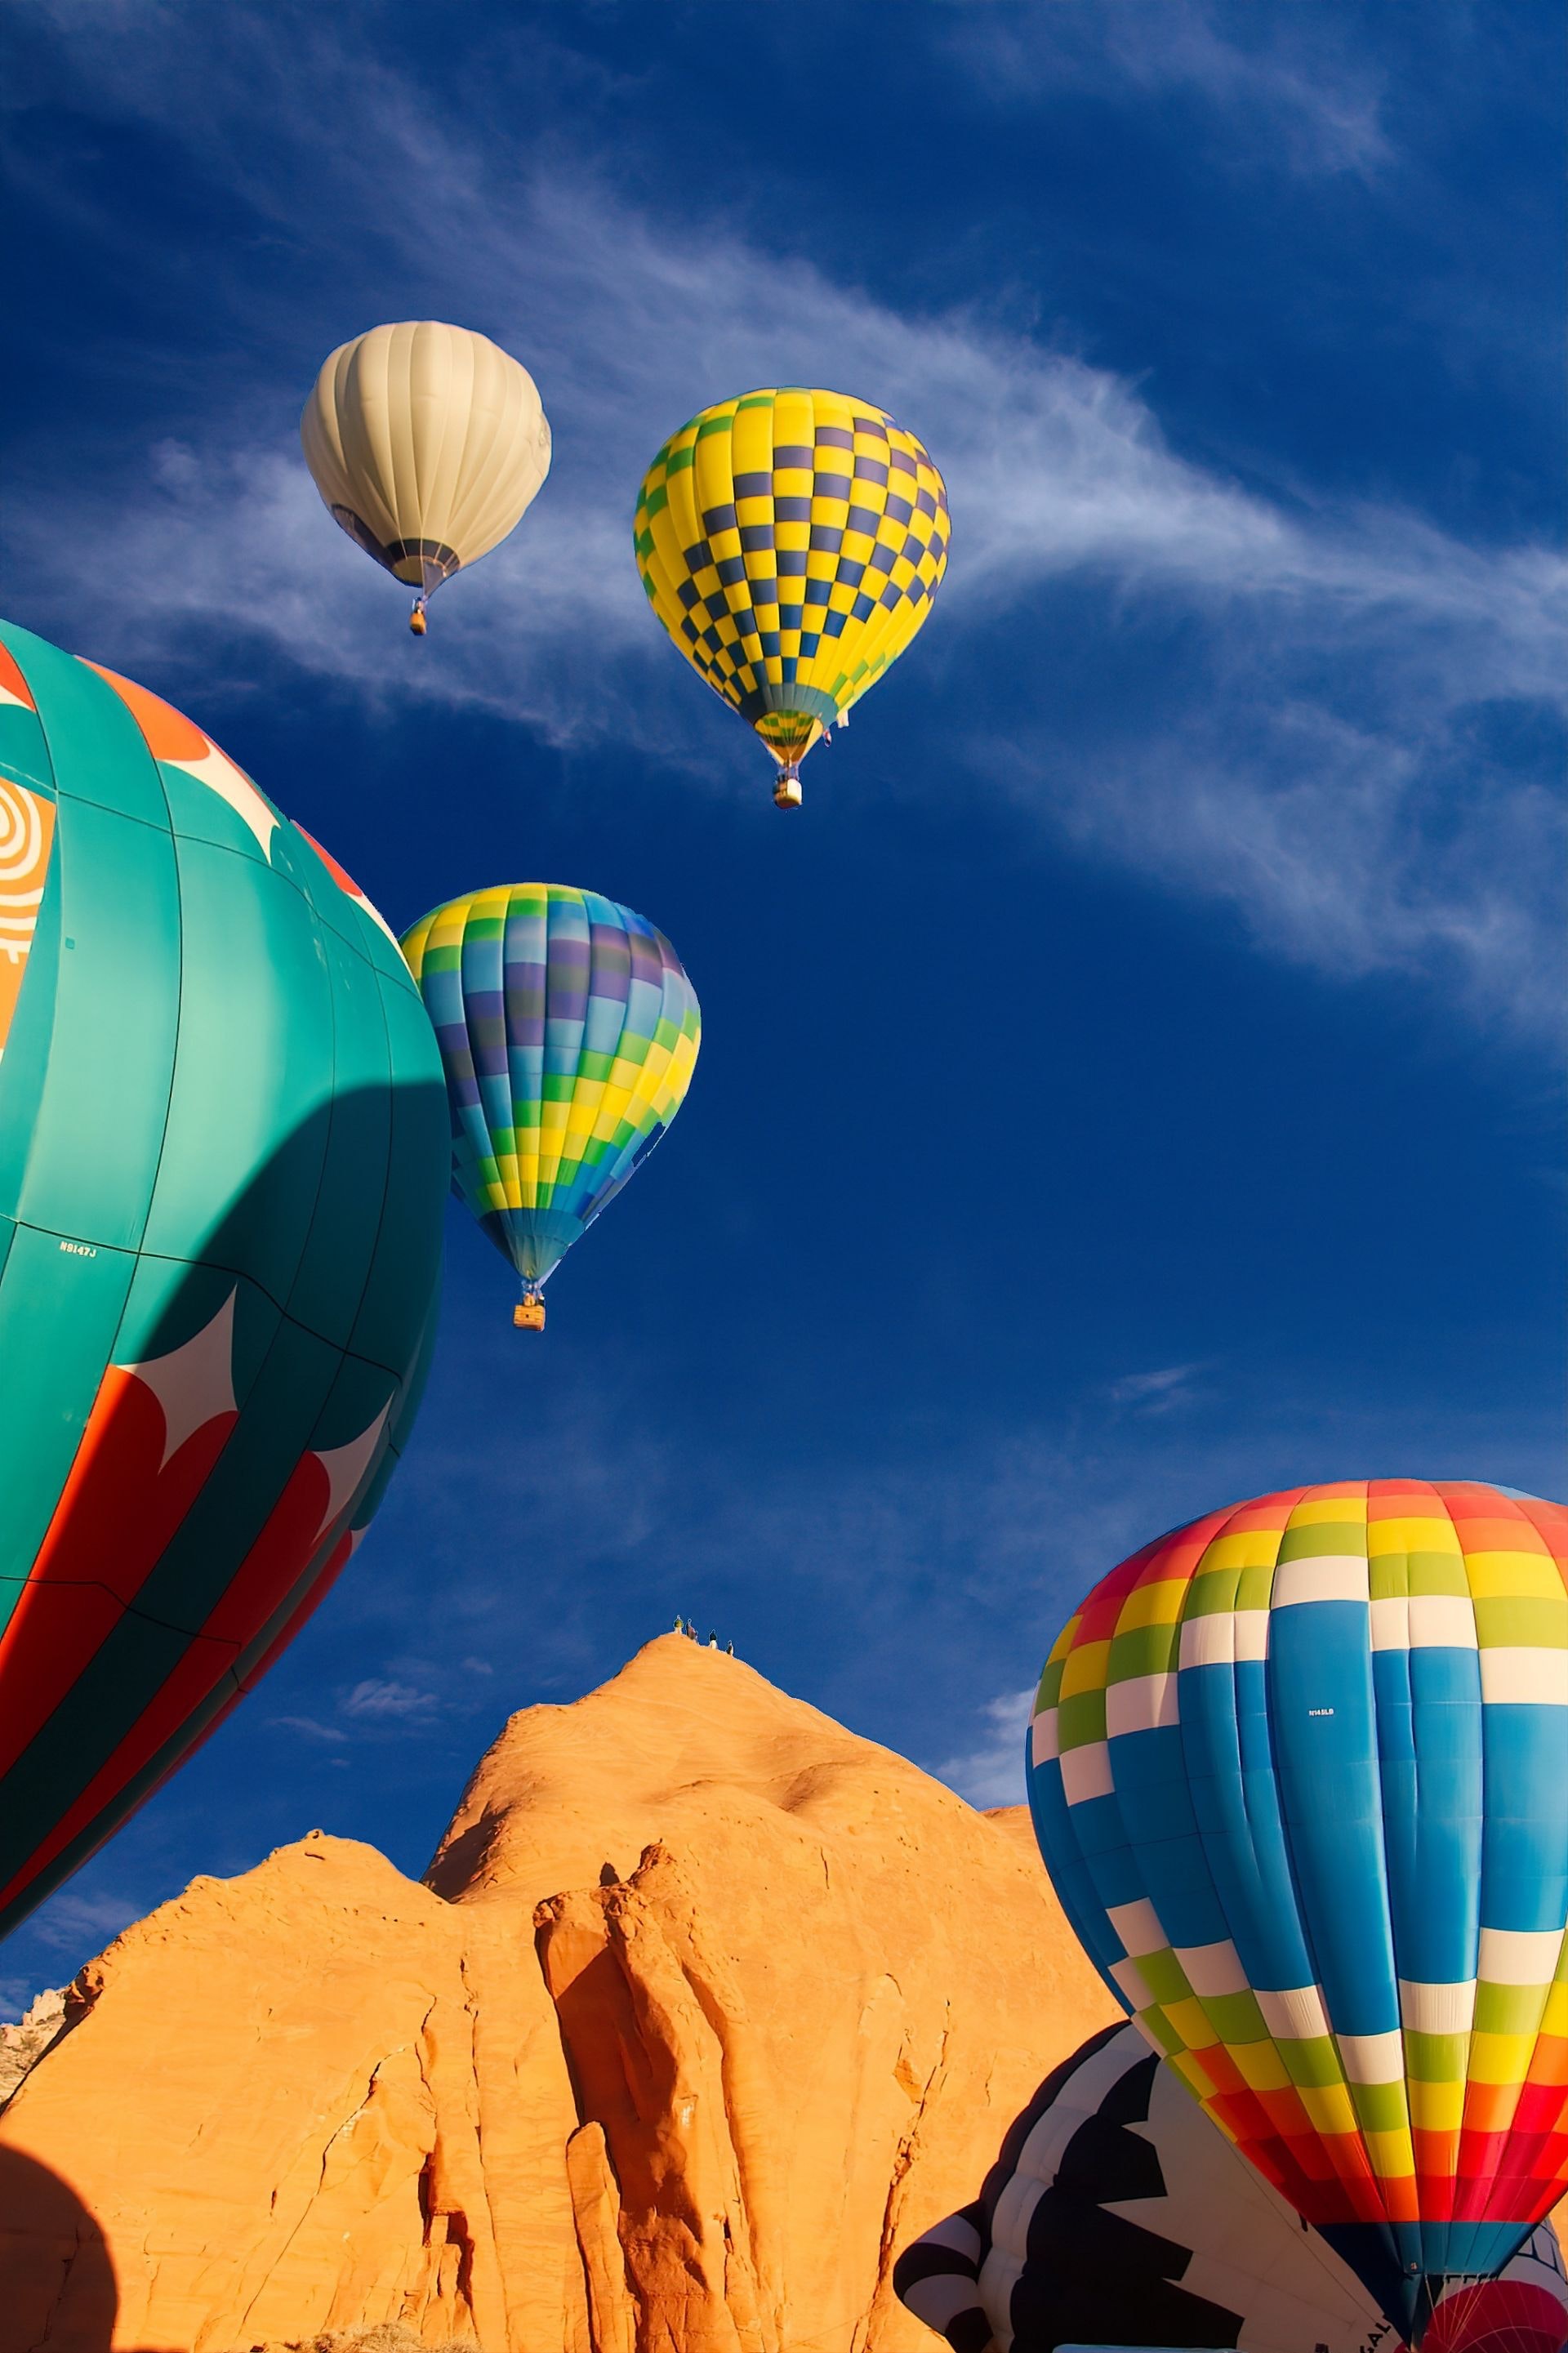 hintergrundbild für handy,heißluftballon,heißluftballon fahren,himmel,tagsüber,ballon